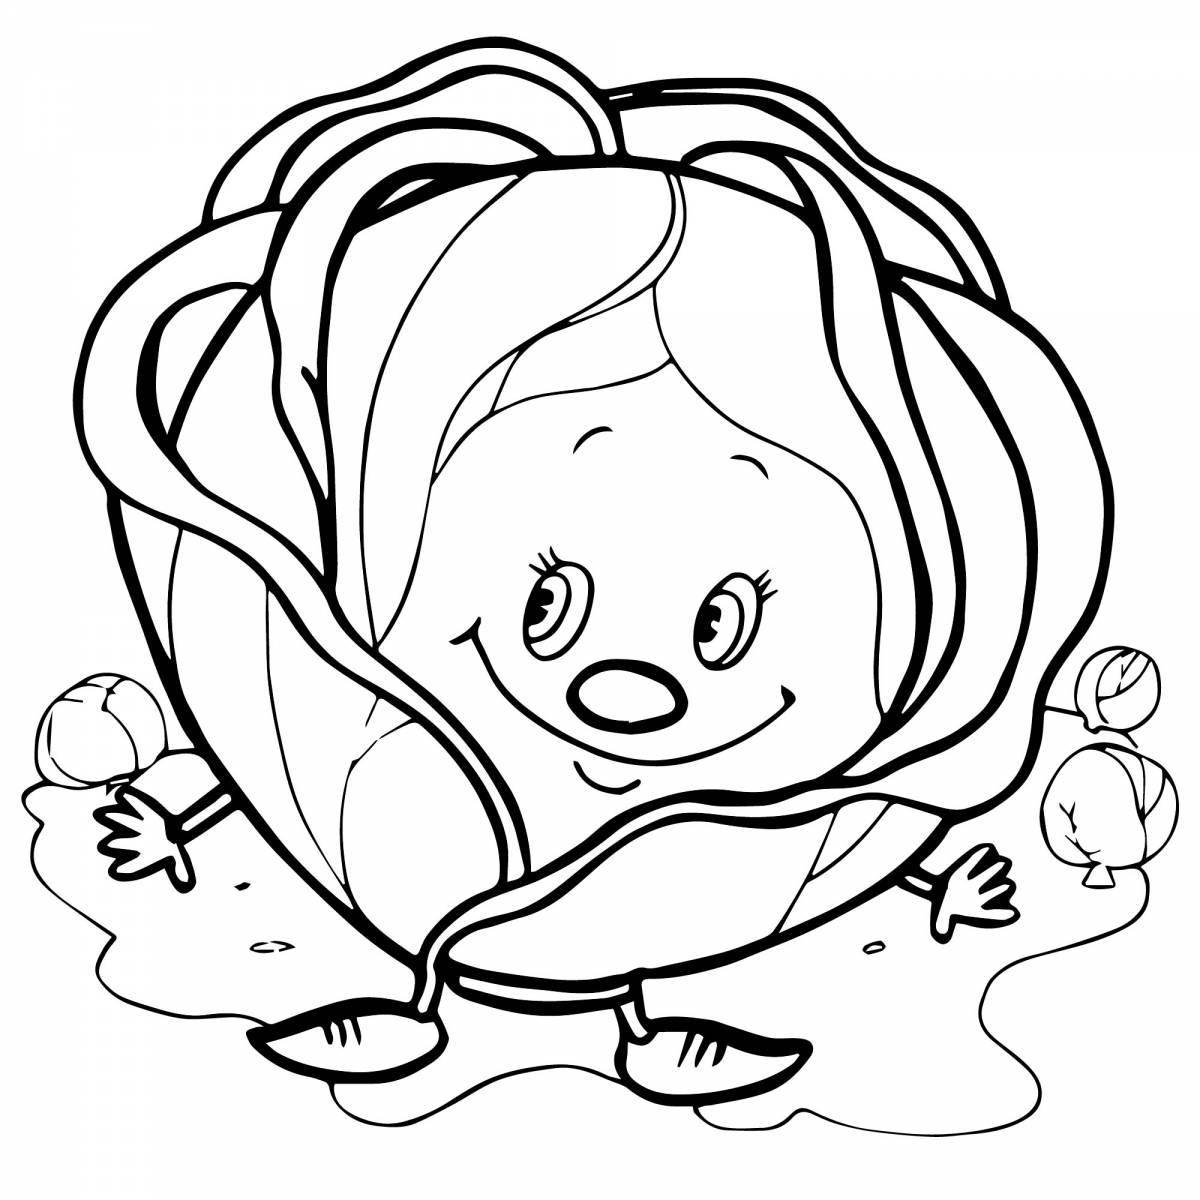 Творческая раскраска капусты для детей 3-4 лет